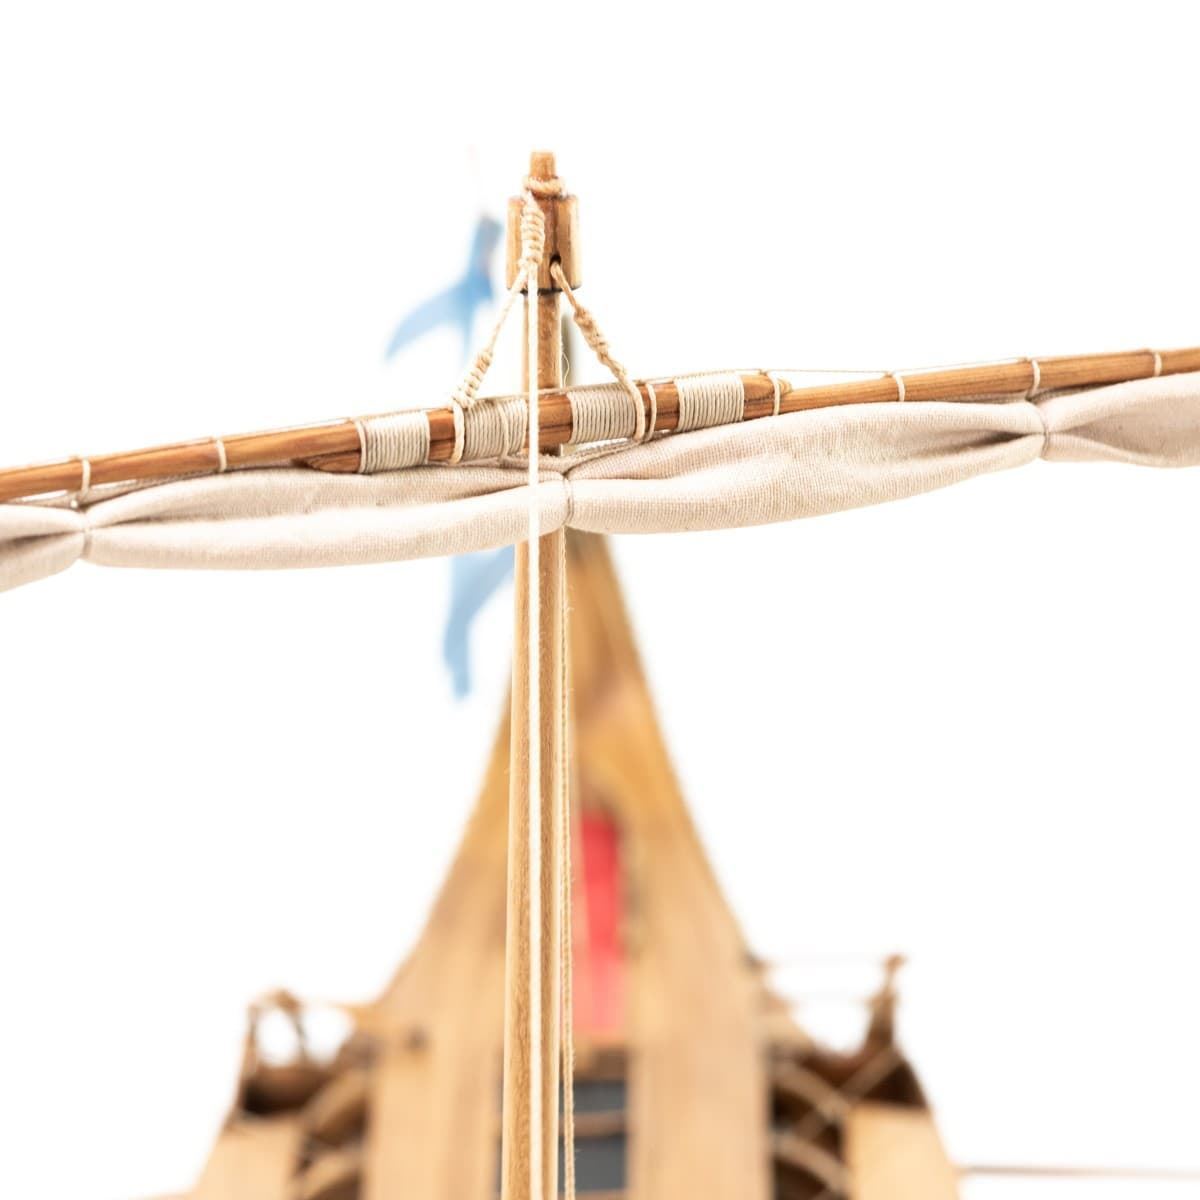 Maqueta barco de madera BIREME - Imagen 12